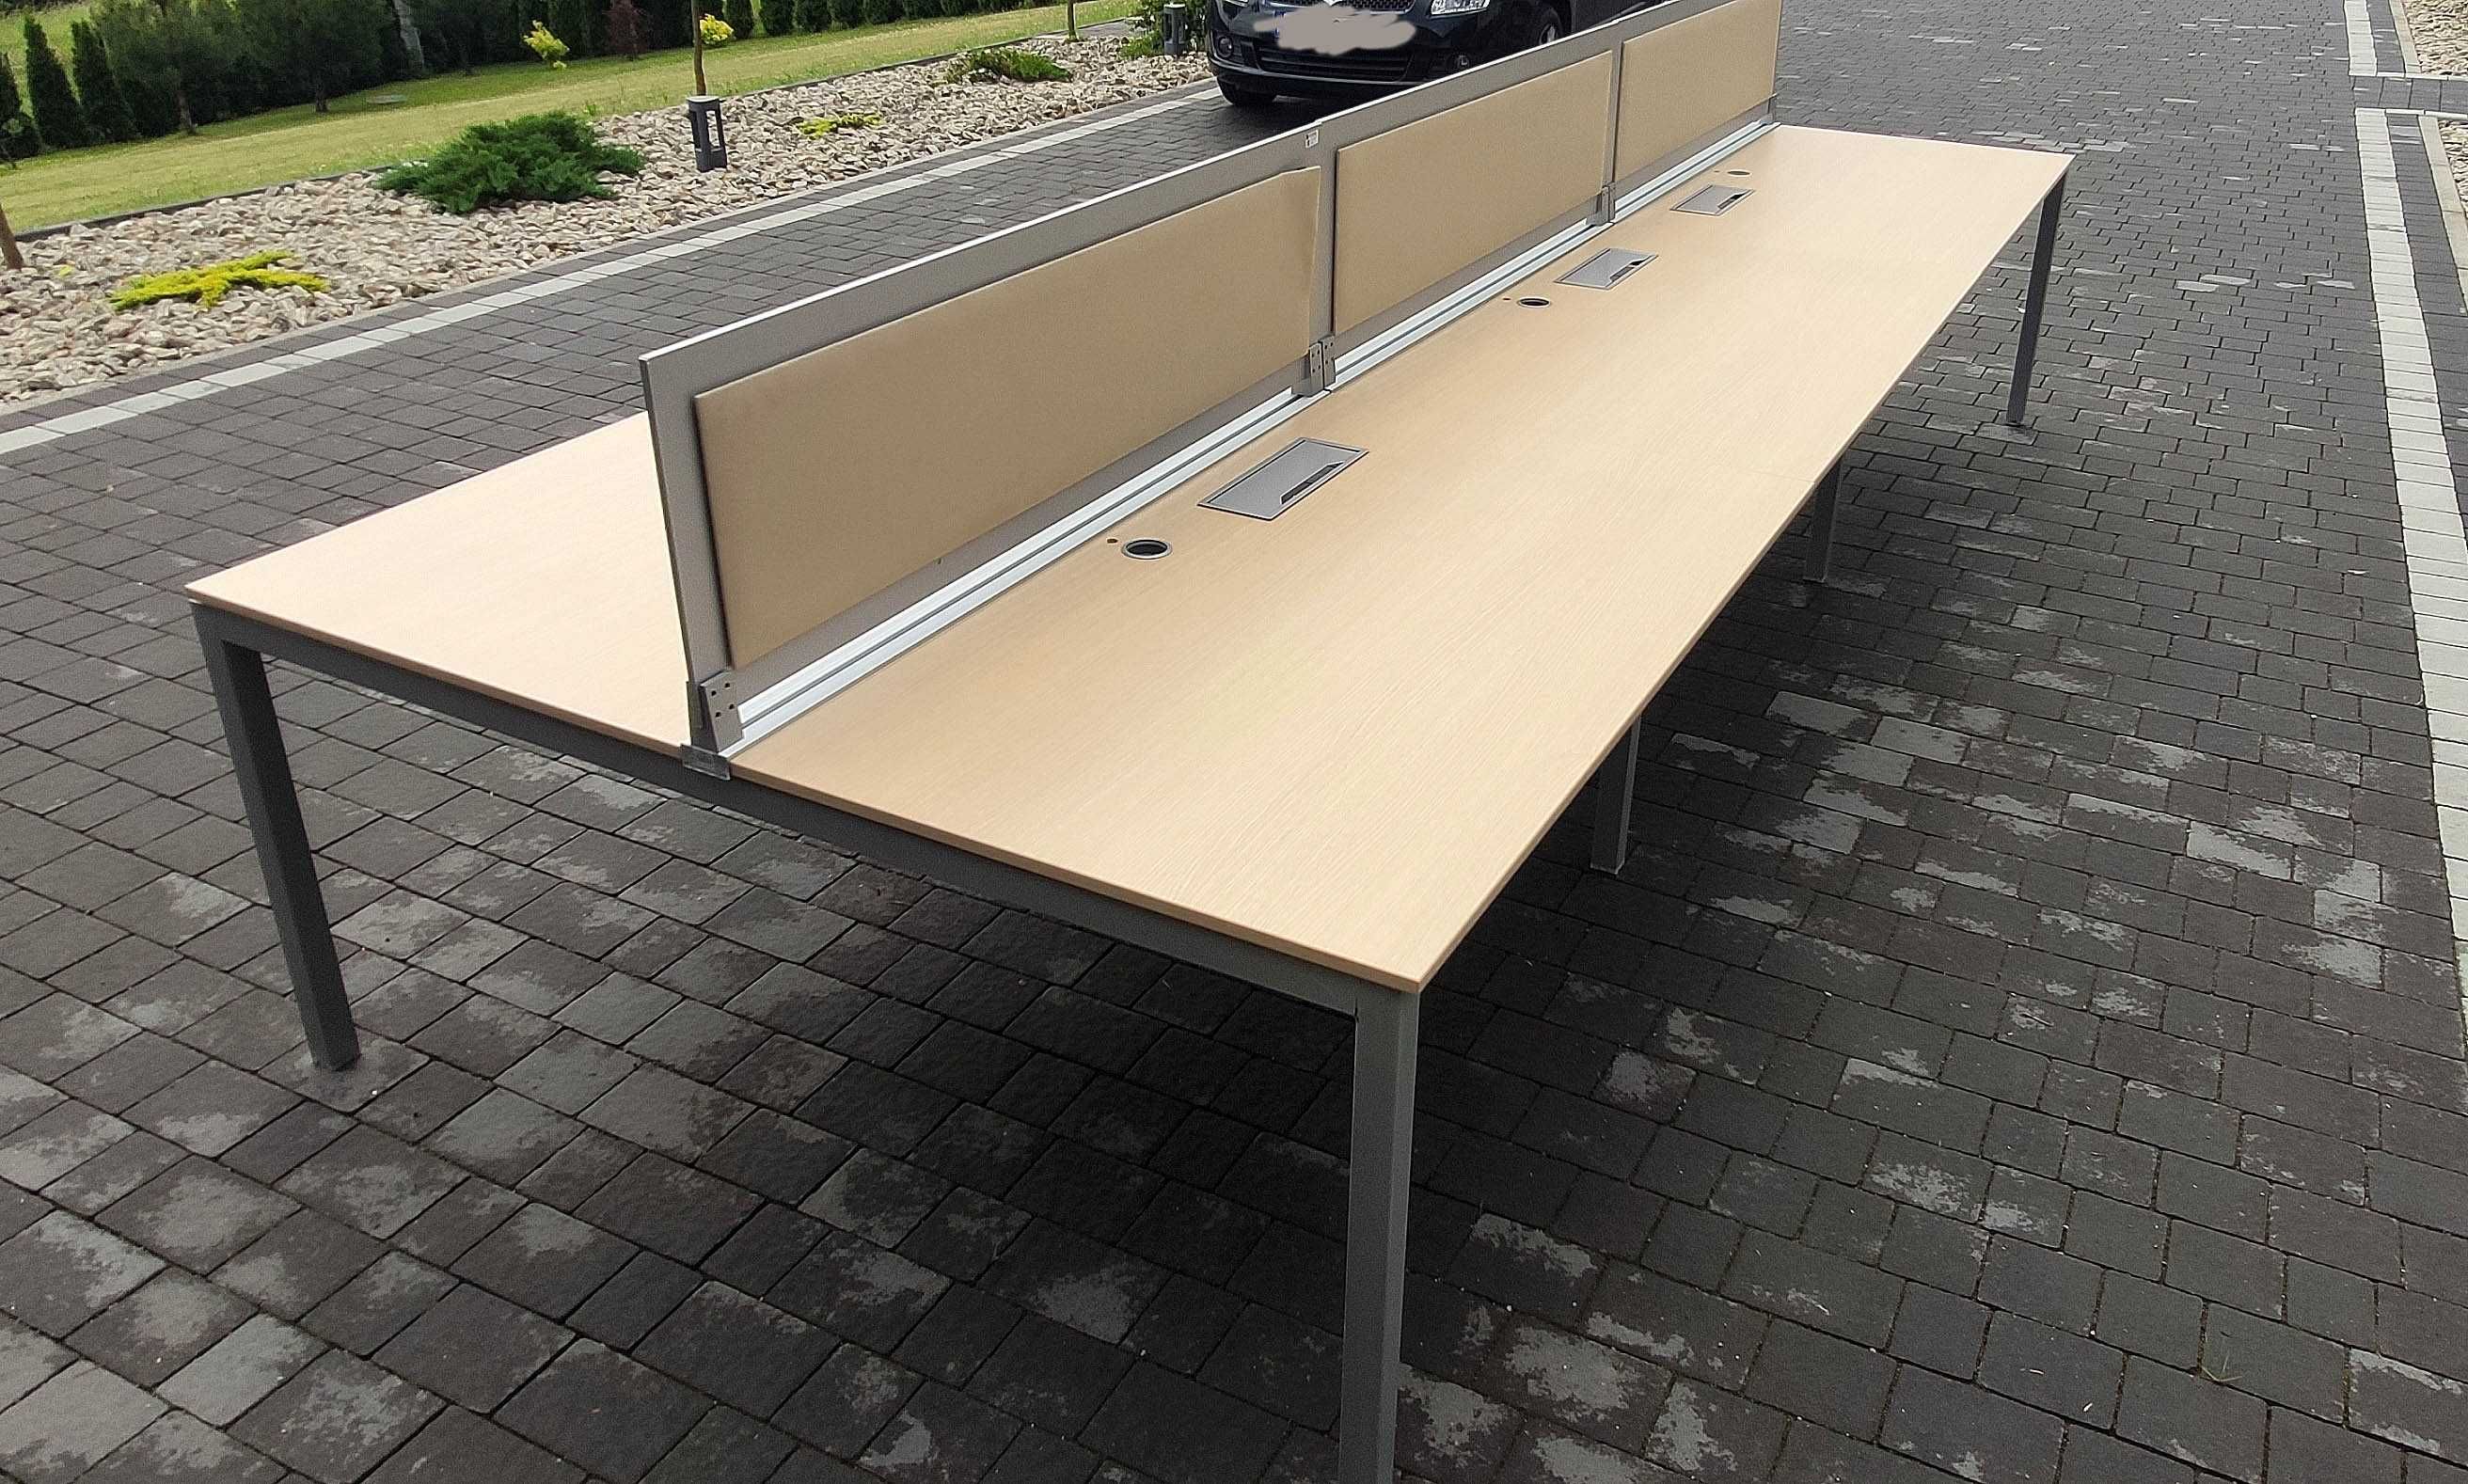 Duży stół warsztatowy, bankietowy, montażowy, stelaż 420x180cm 2 stoły